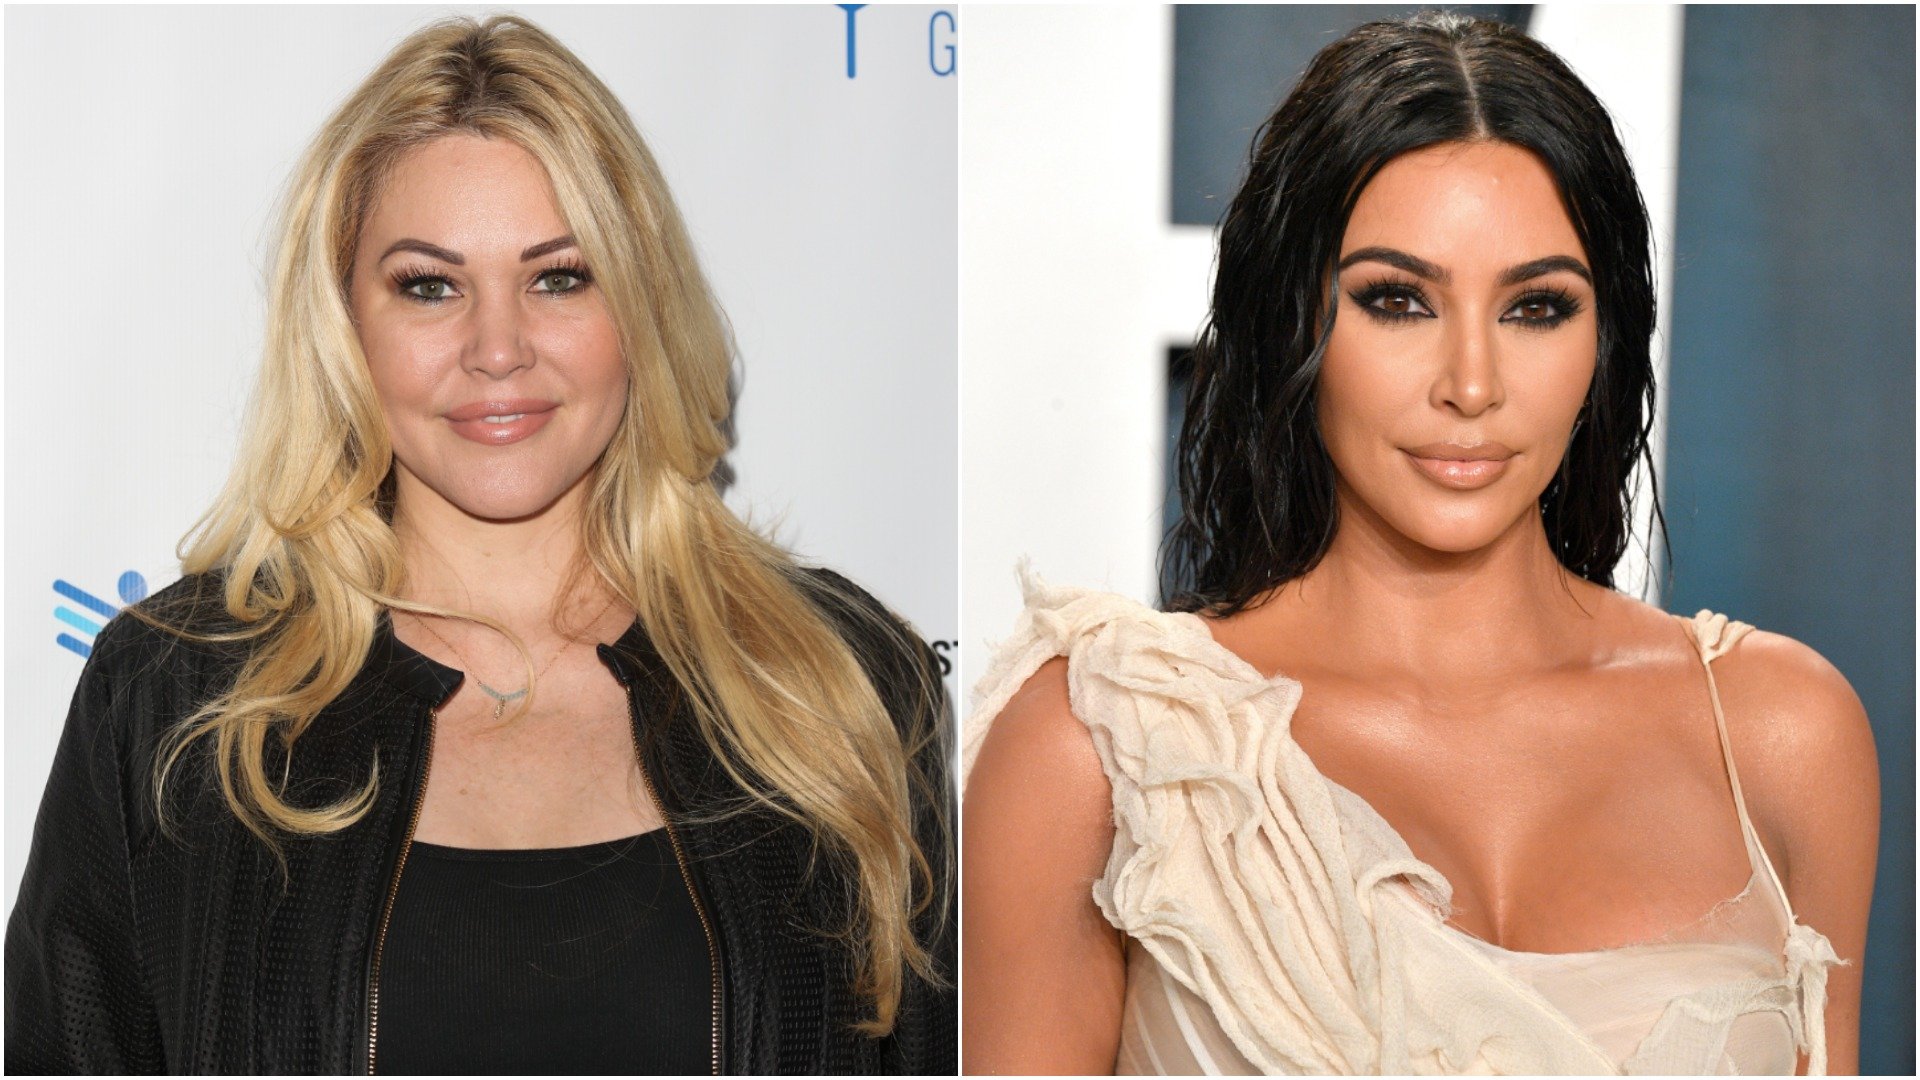 Shanna Moakler and Kim Kardashian West